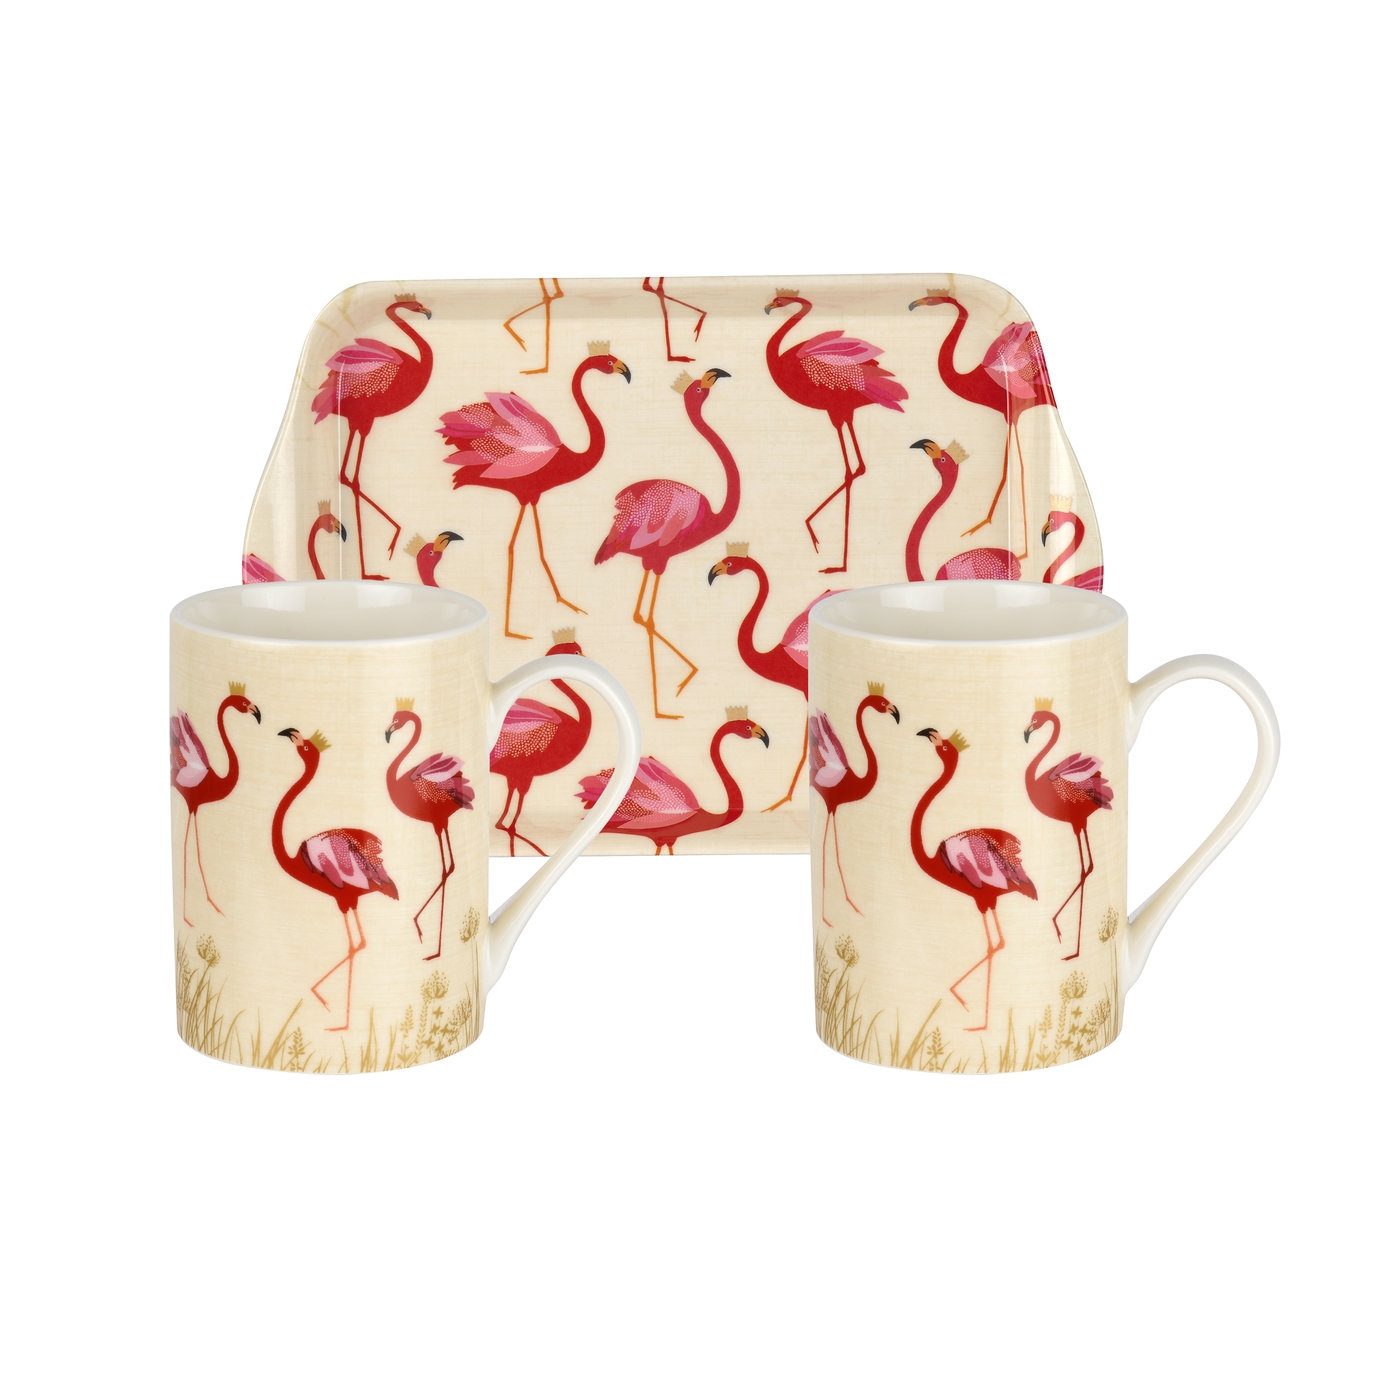 Flamingo 3 Piece Mug & Tray Set image number null